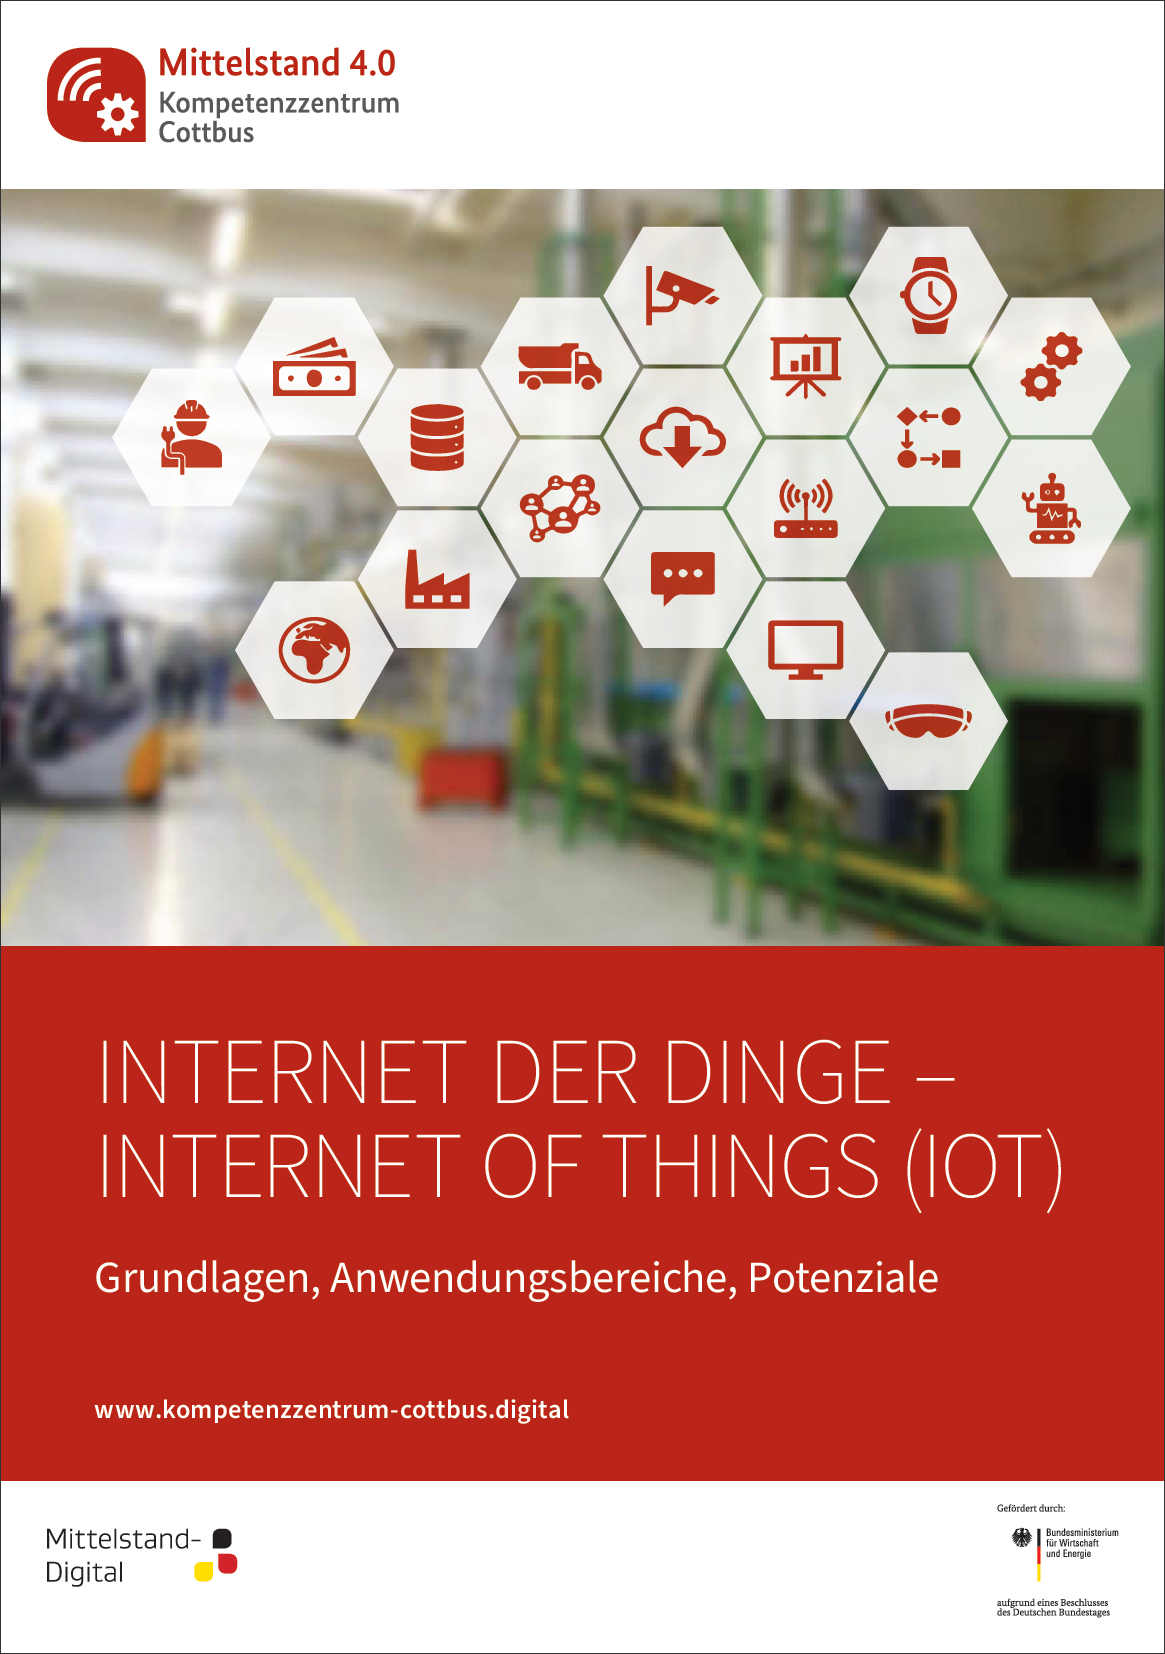 Internet der Dinge (IoT) im Handwerk